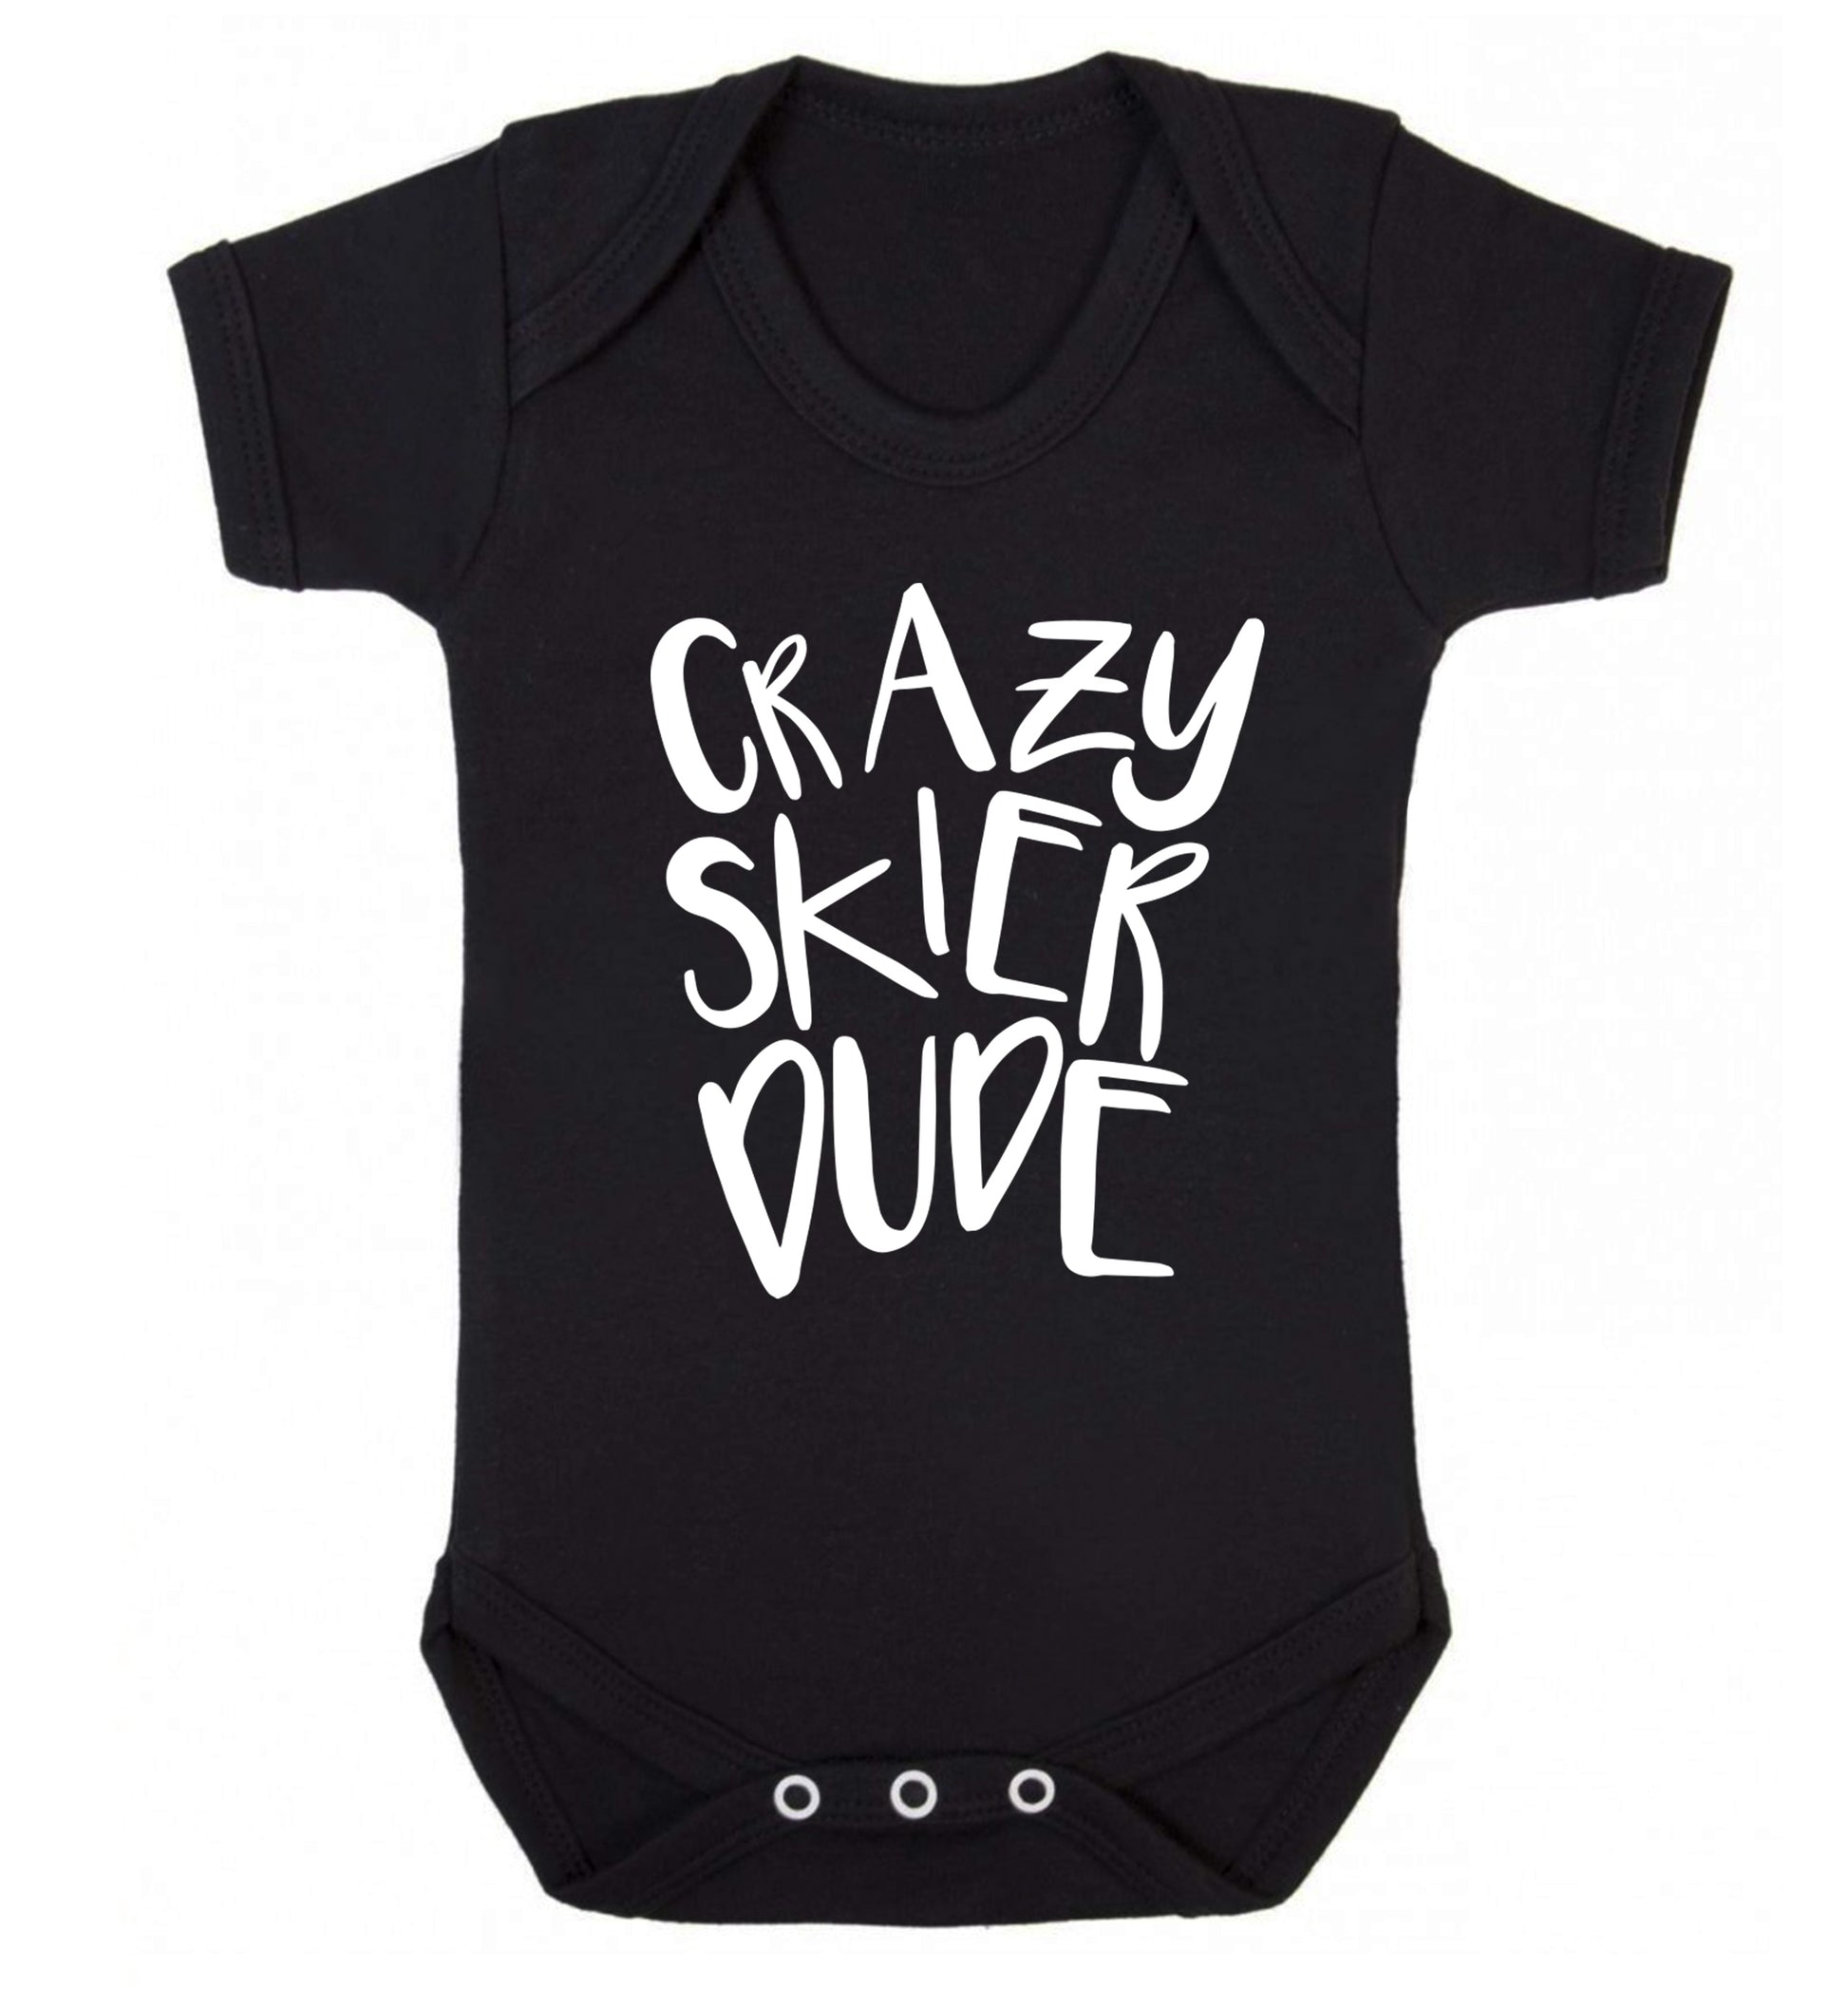 Crazy skier dude Baby Vest black 18-24 months